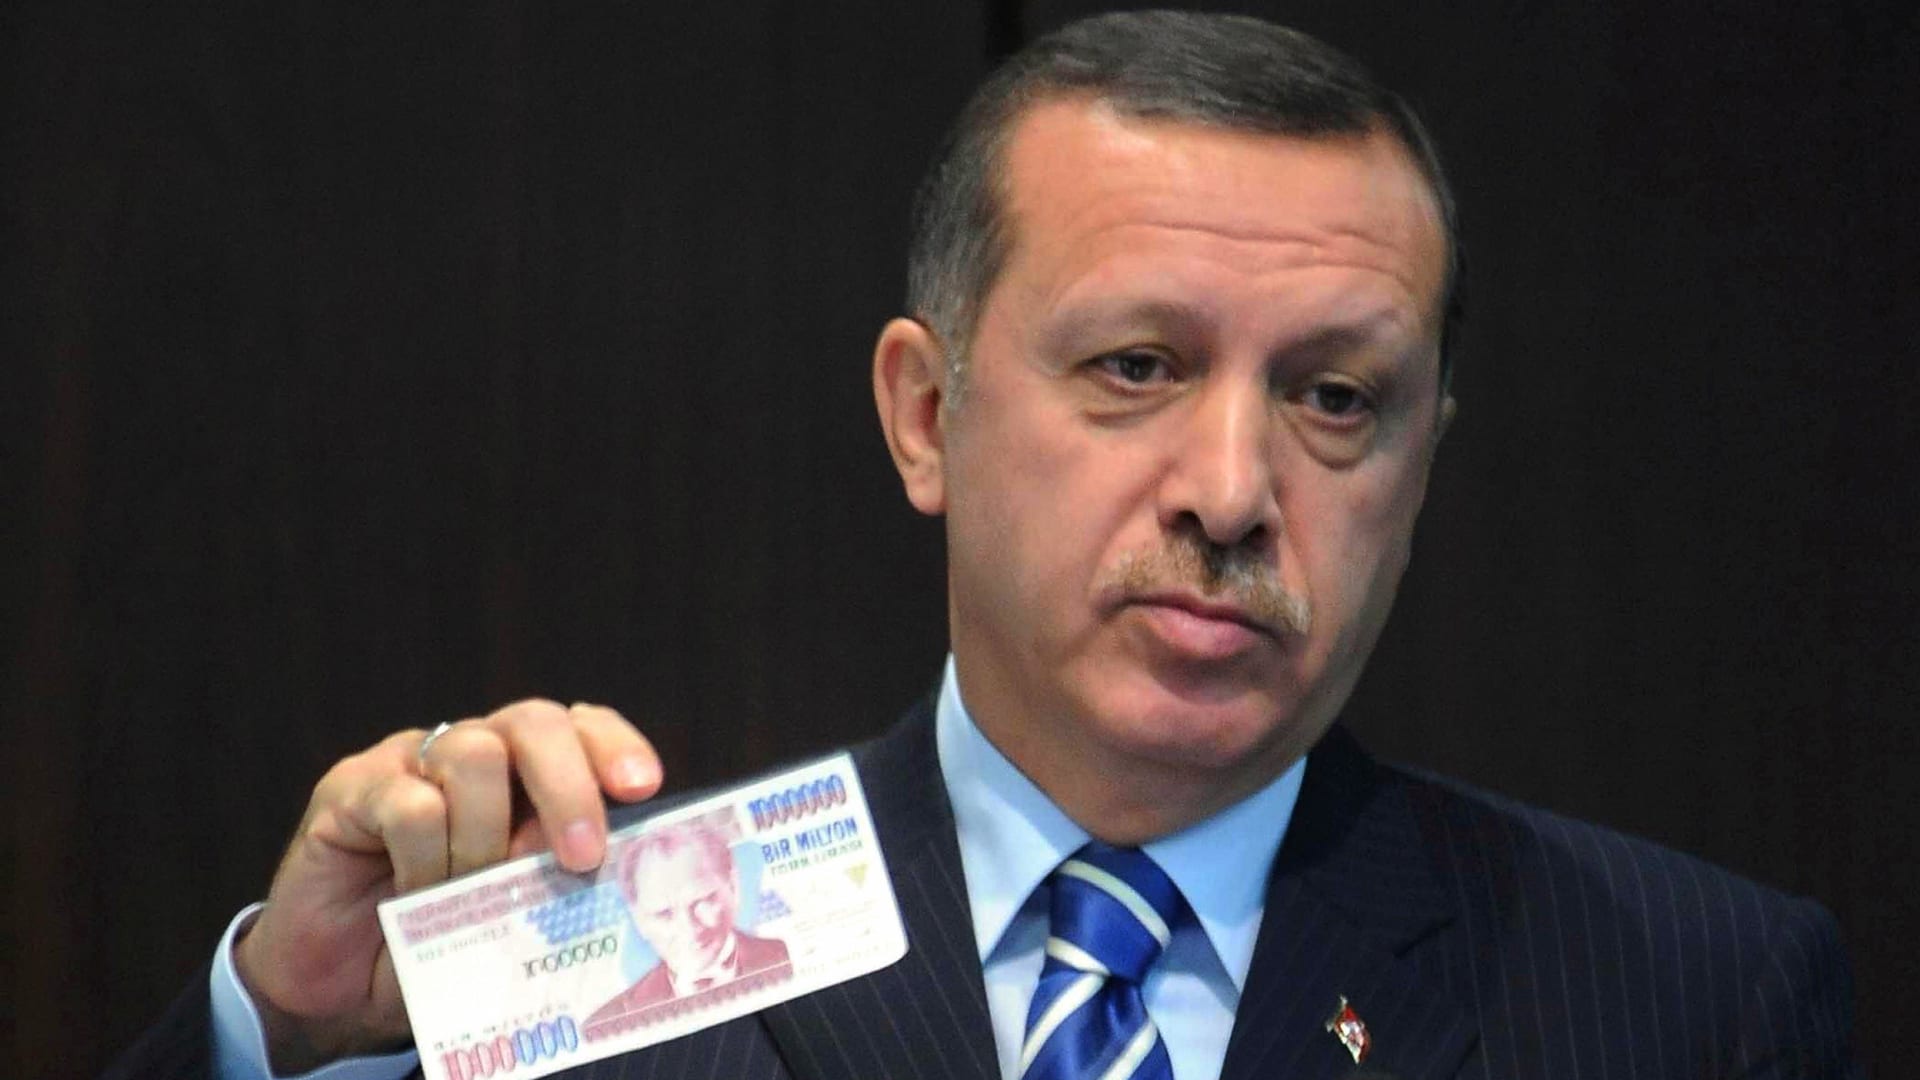 صورة ارشيفية للرئيس التركي رجب طيب أردوغان يحمل ورقة نقدية تركية العام 2008